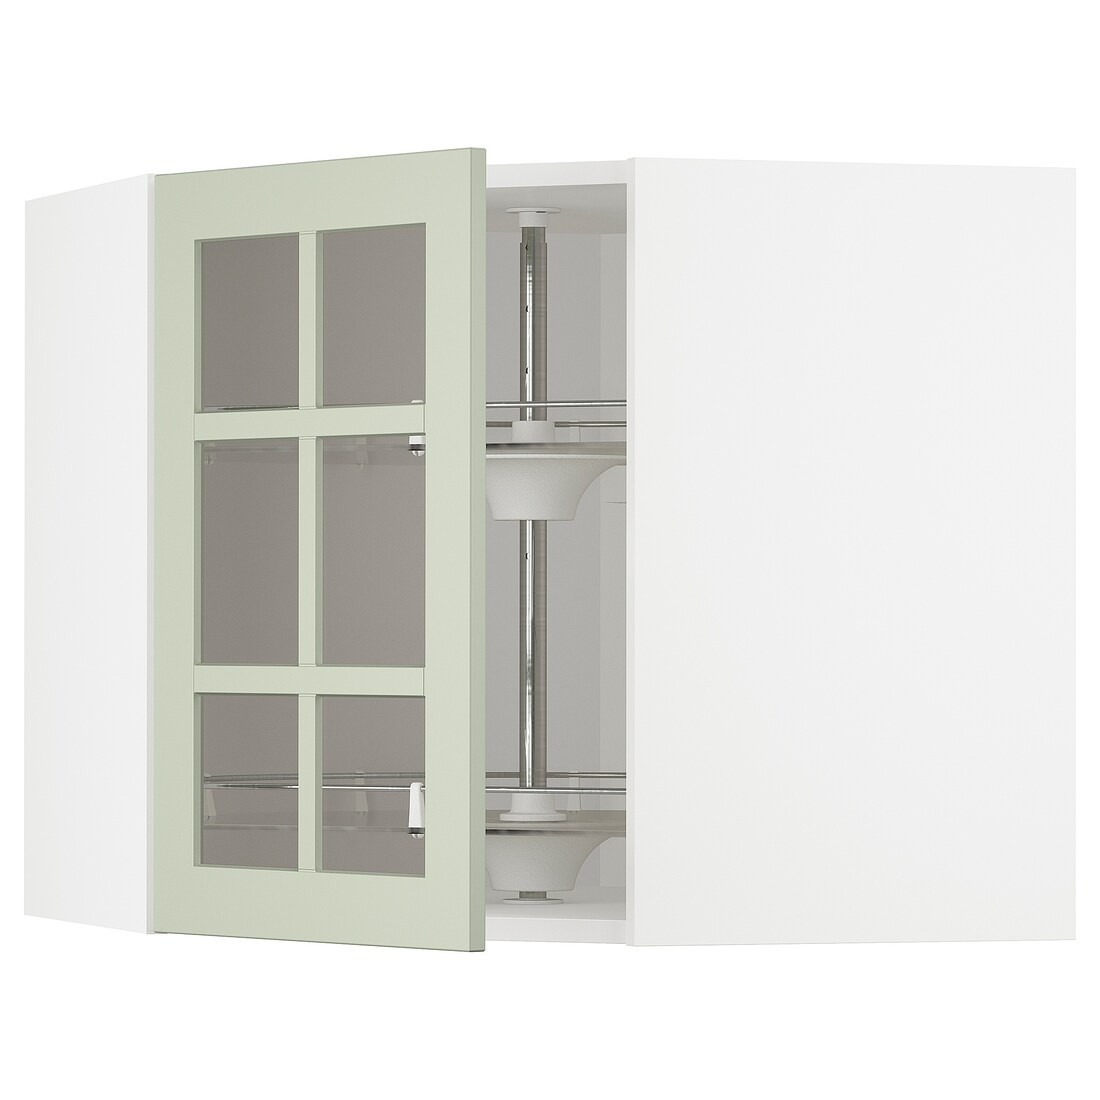 IKEA METOD МЕТОД Угловой настенный шкаф с каруселью / стеклянная дверь, белый / Stensund светло-зеленый, 68x60 см 79486188 794.861.88